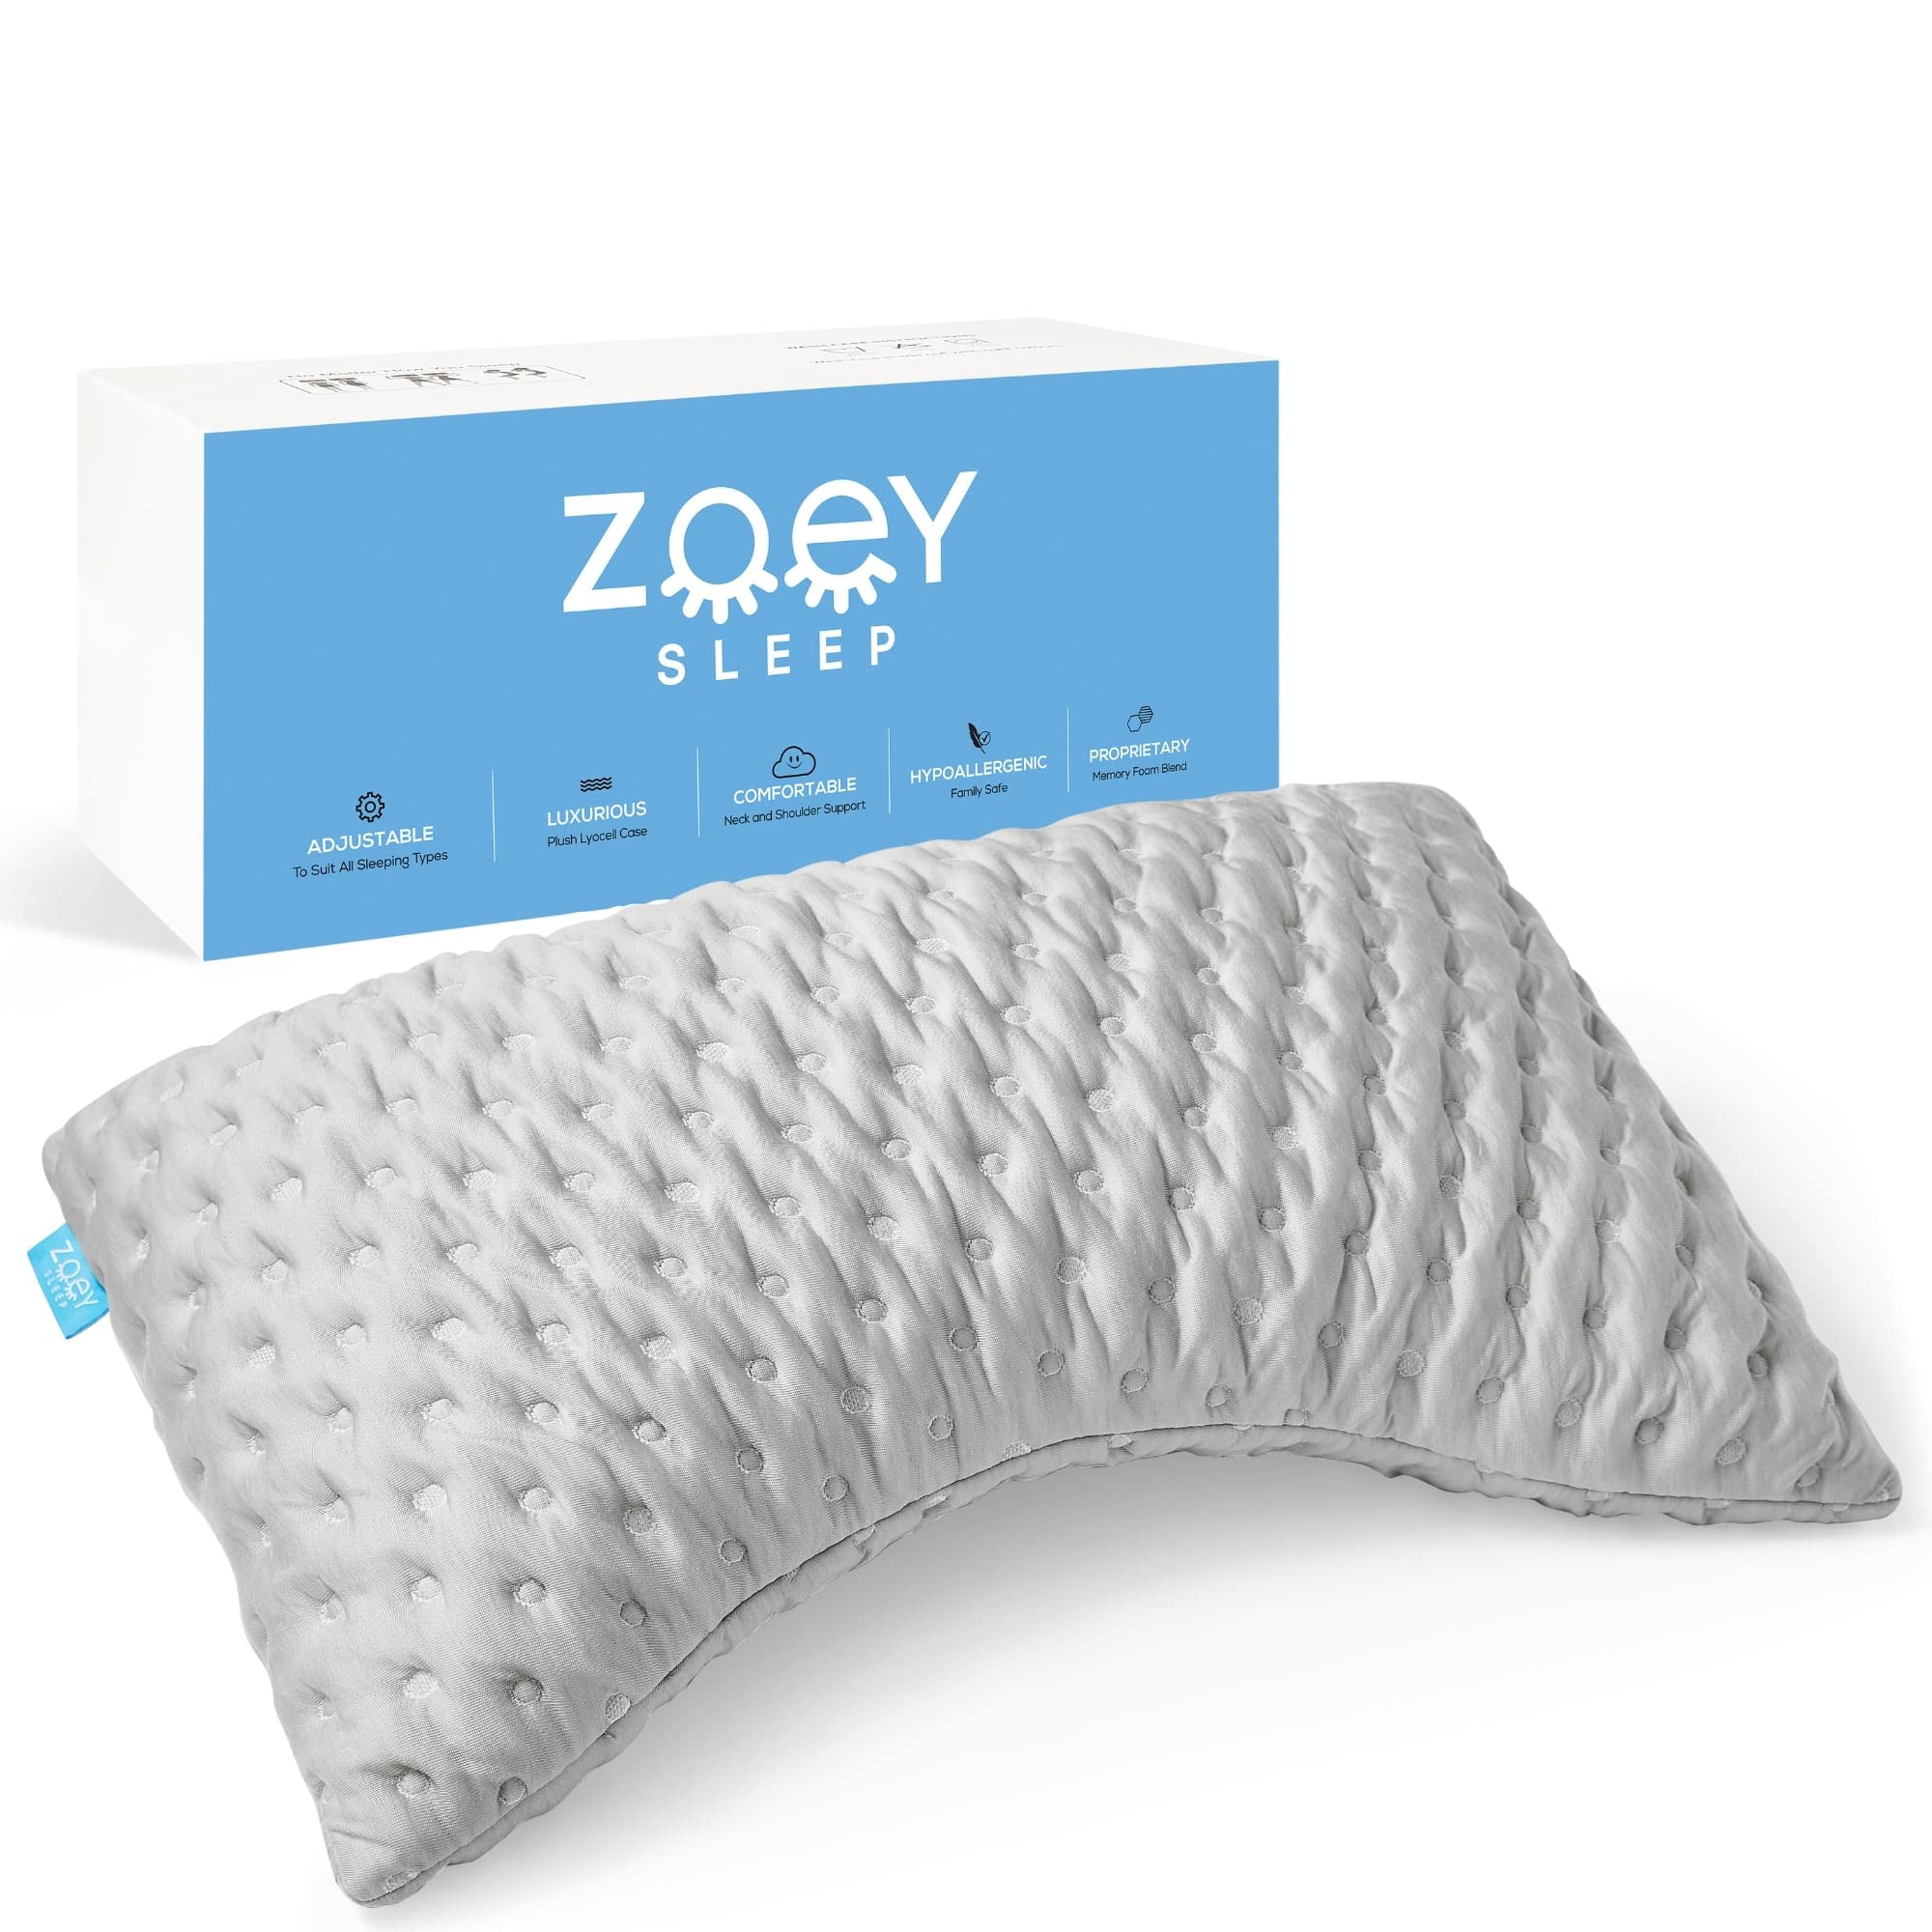 Zoey Sleep 侧睡枕头 - 记忆海绵睡眠枕头 - 100% 可调节支撑阁楼 - 有助于缓解颈部和肩部疼痛